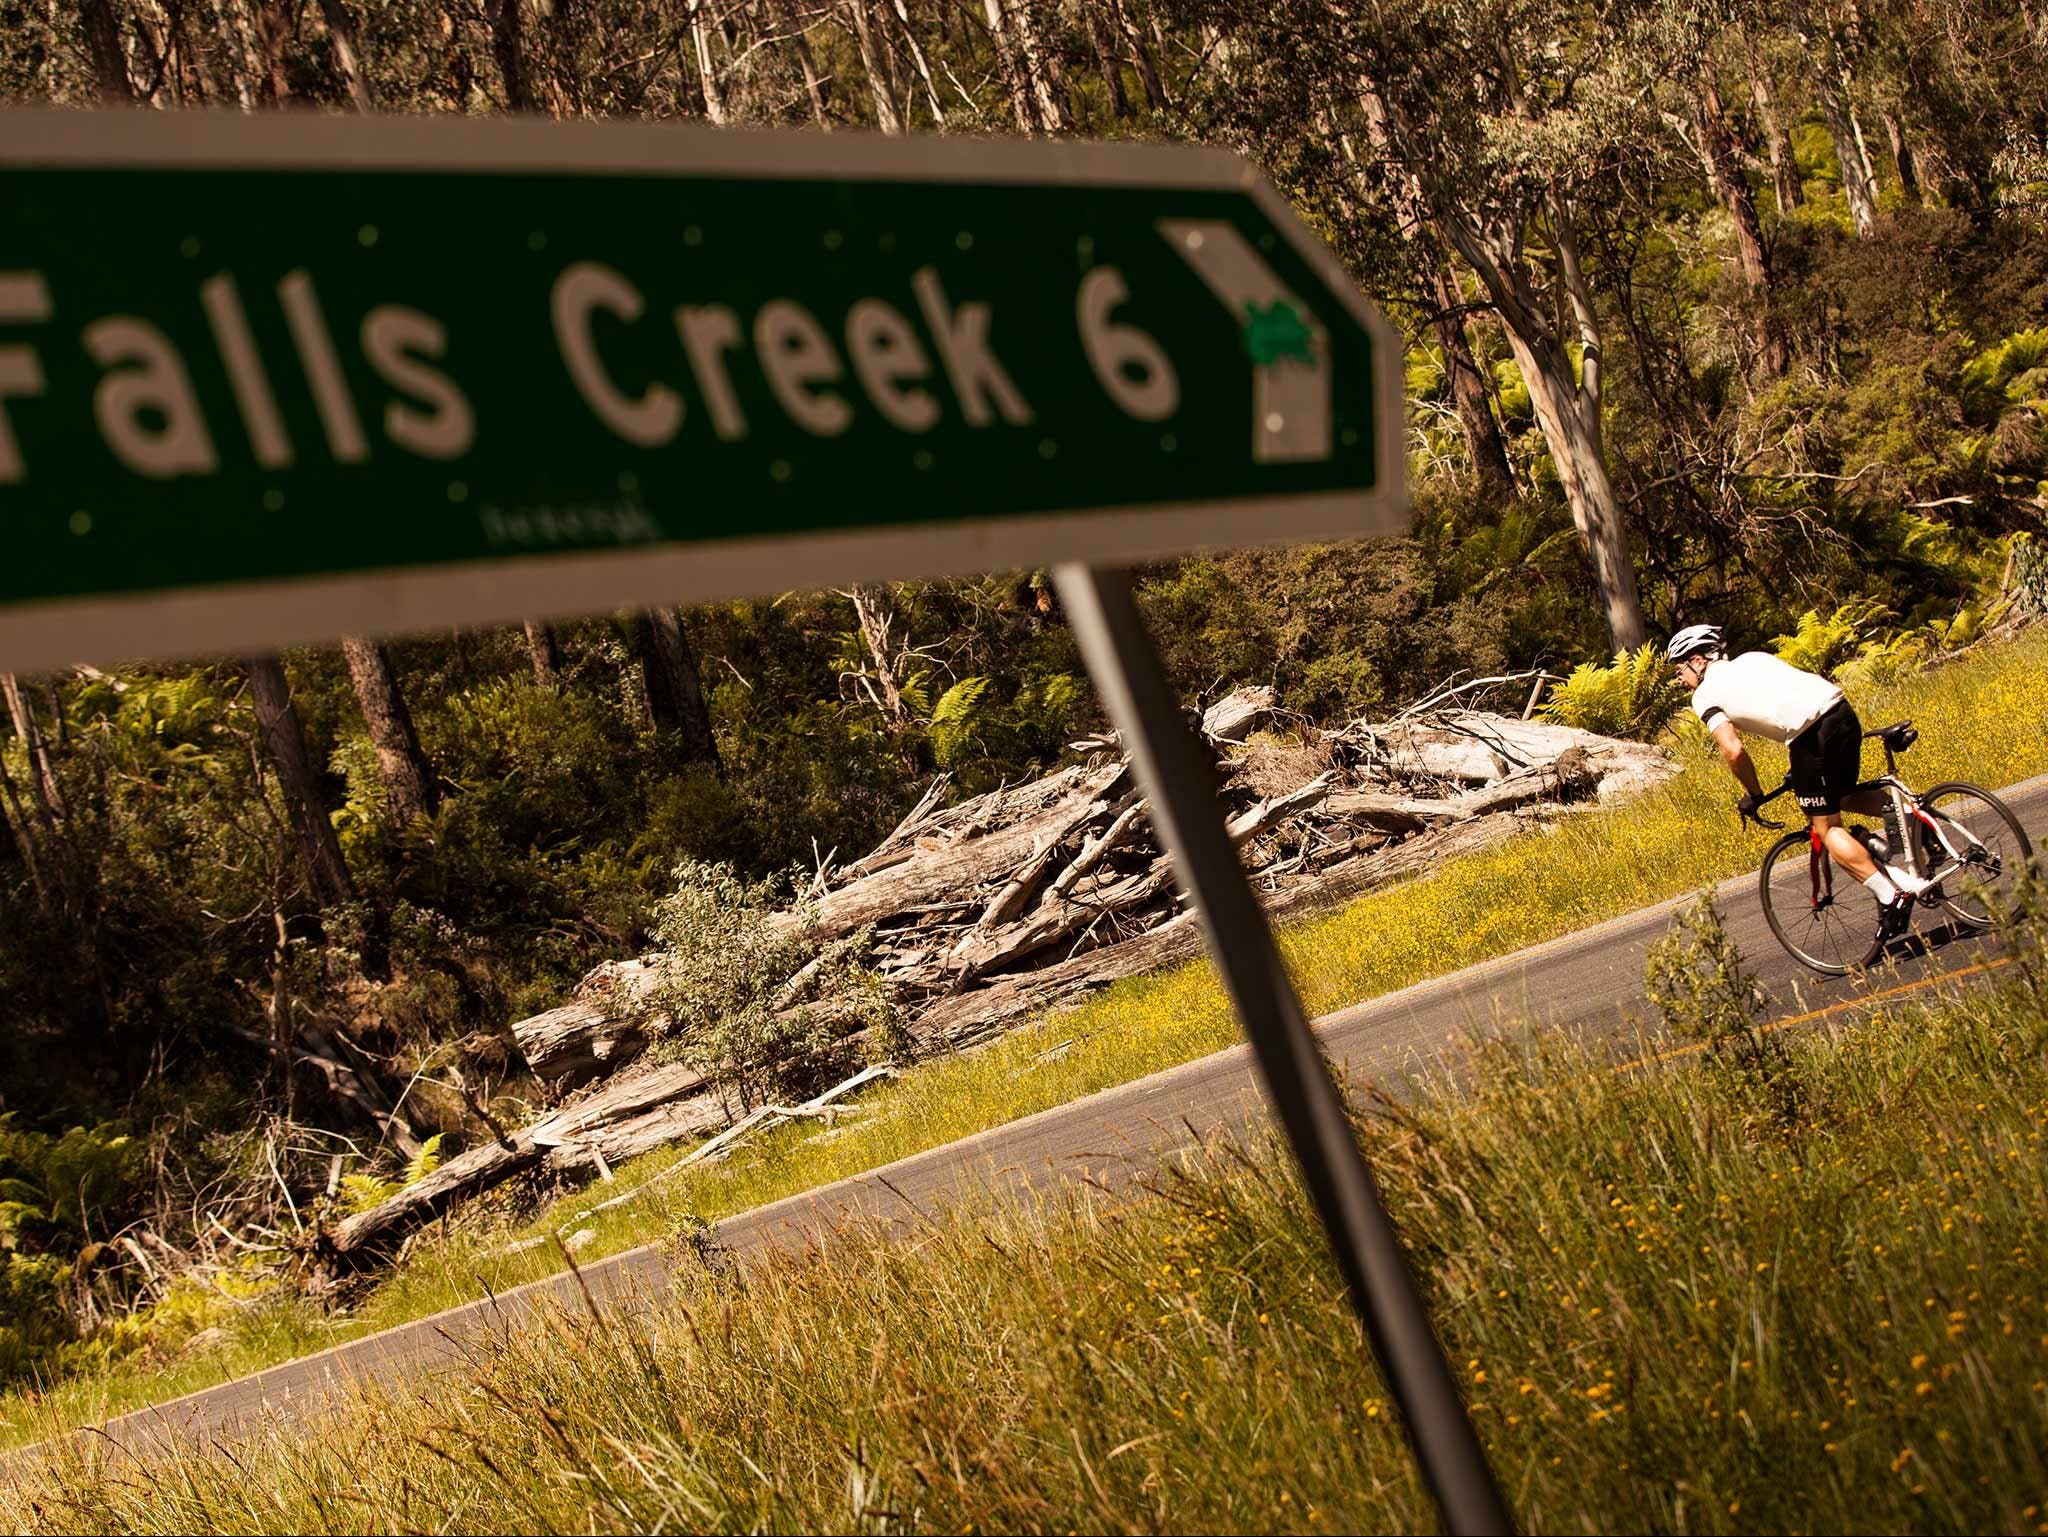 7 Peaks Ride - Falls Creek - WA Accommodation